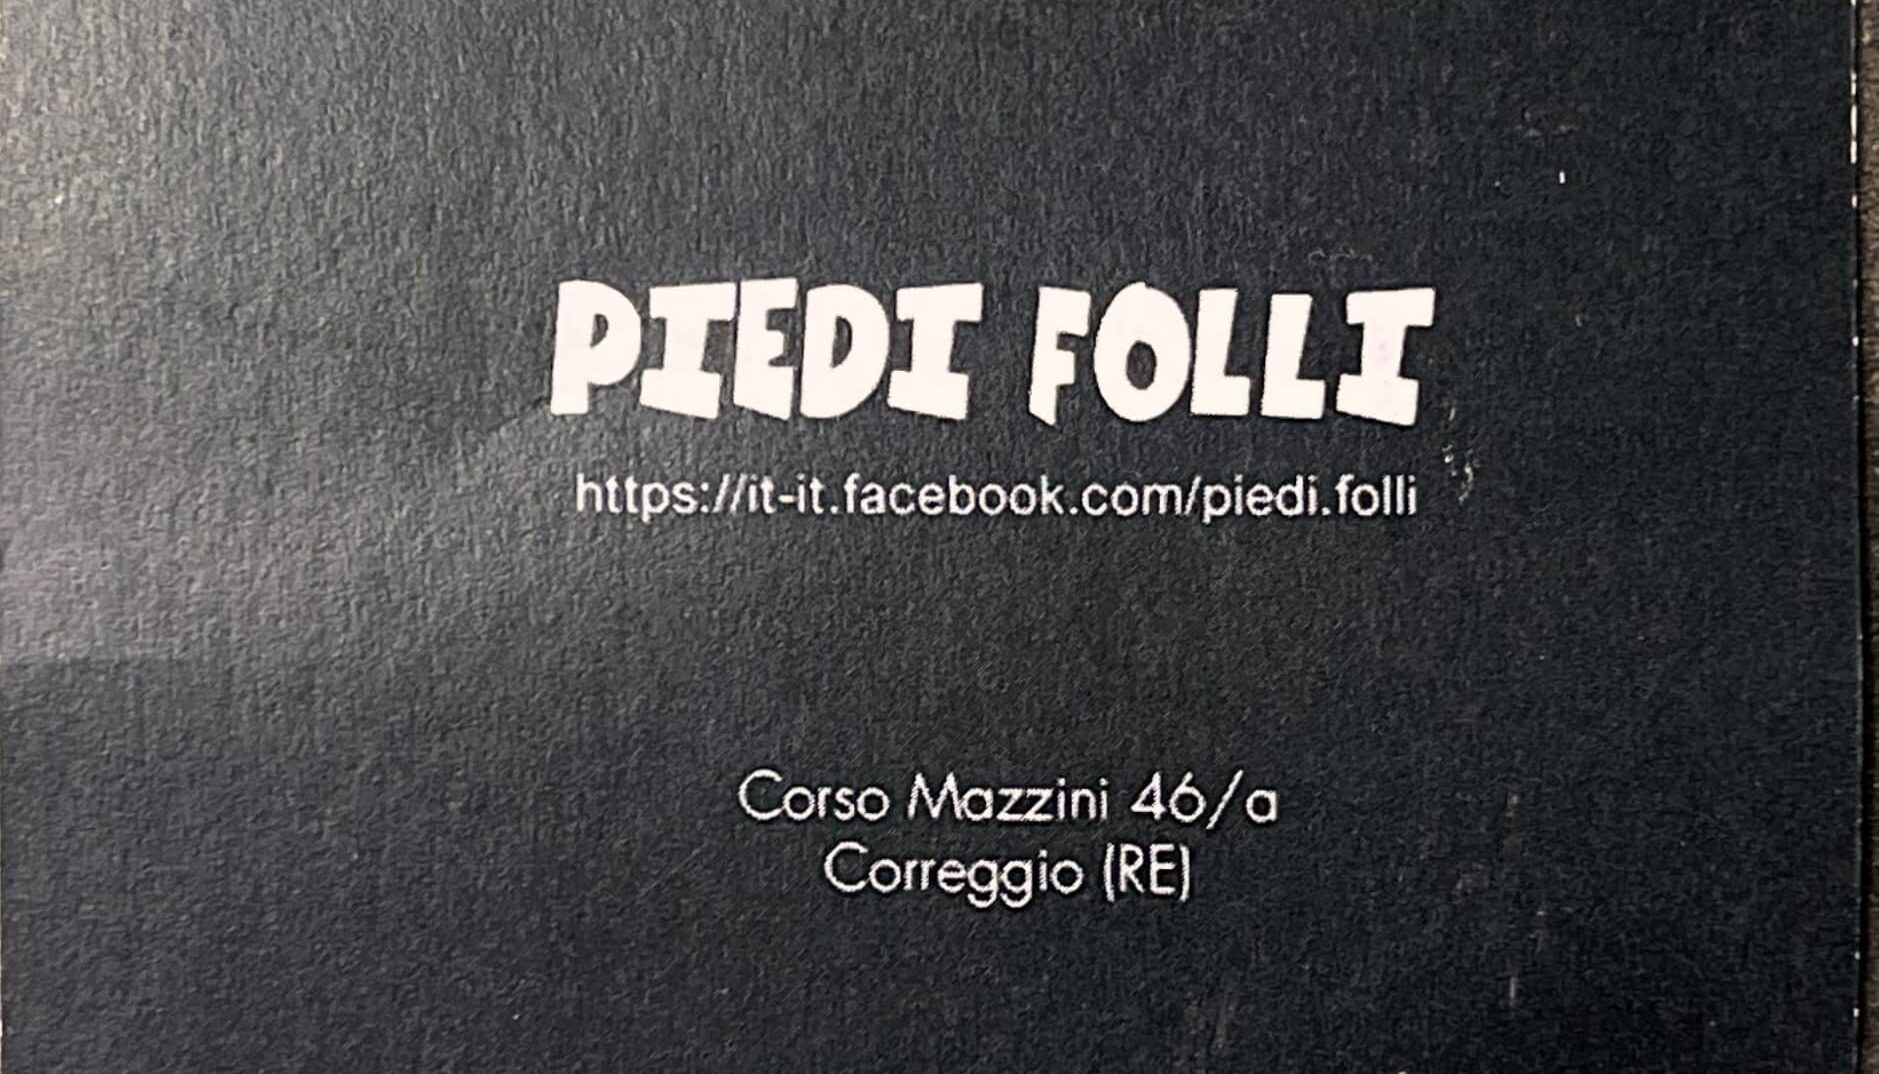 1 Piedi folli_page-0001 (1)